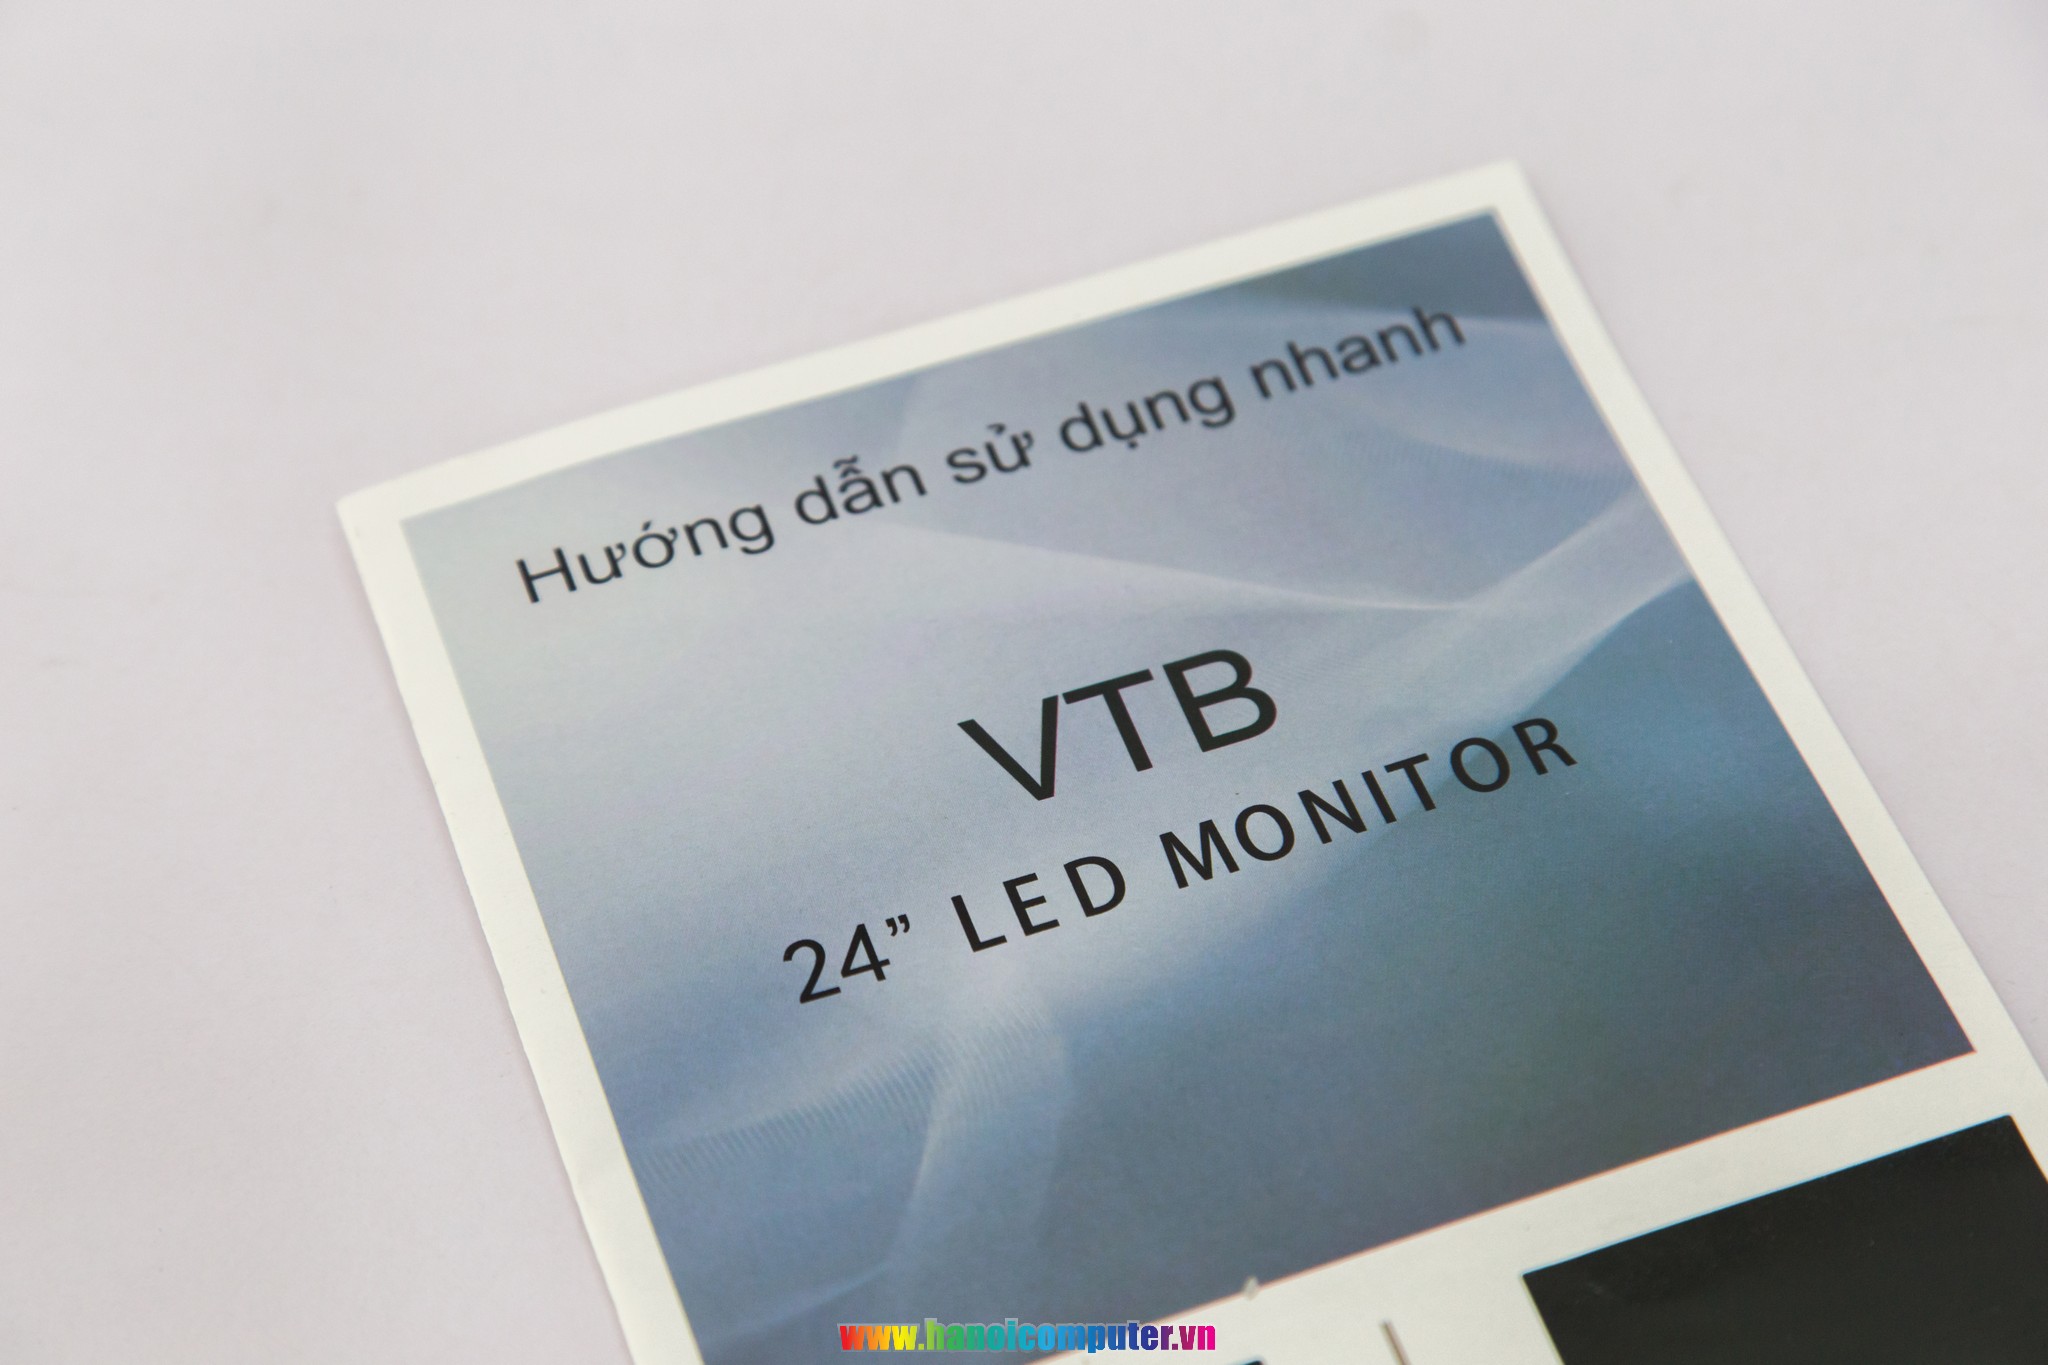 Màn hình 24 inches của VTB 8